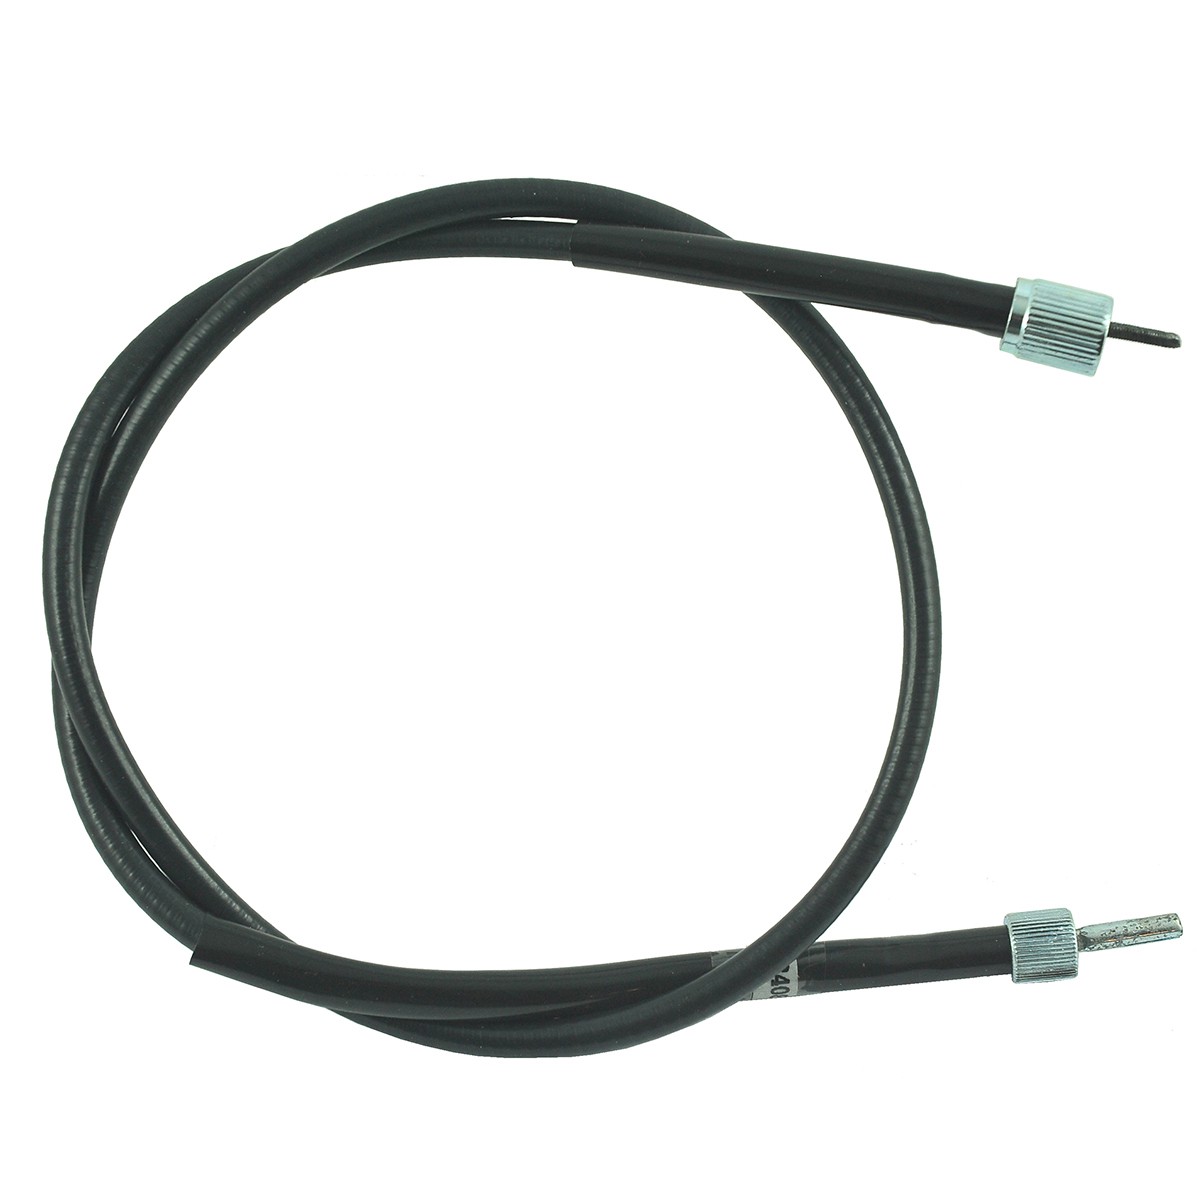 Counter cable / 1220 mm / Kubota L4600/L4708 / TC432-34650 / 5-25-123-20